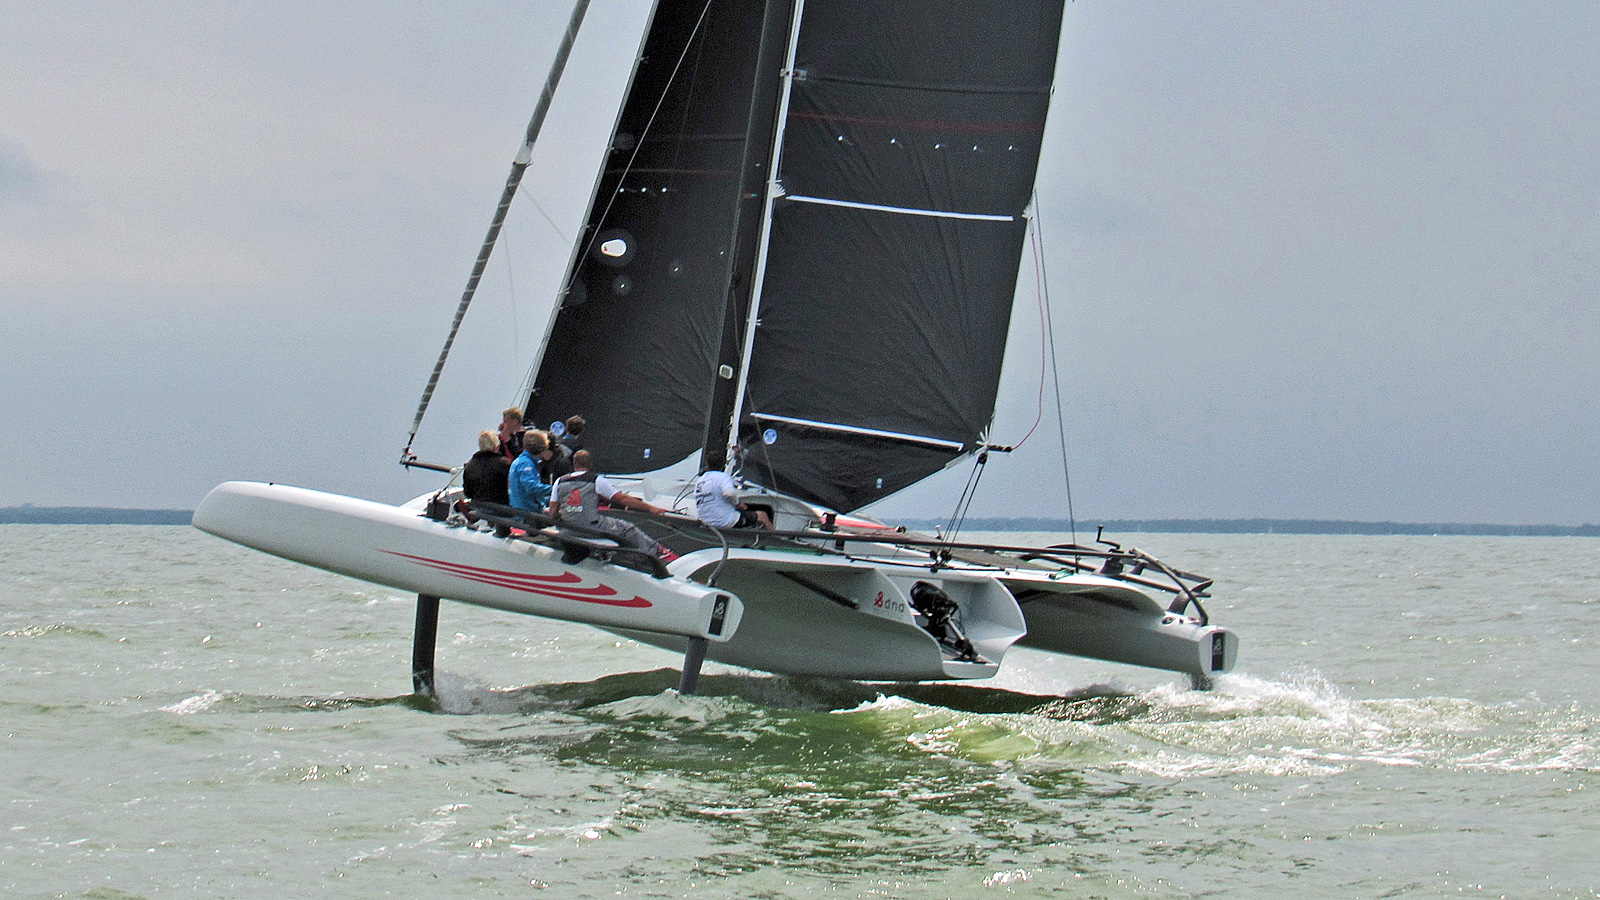 Dna TF10 Trimaran first Sail | Catamaran Racing, News & Design